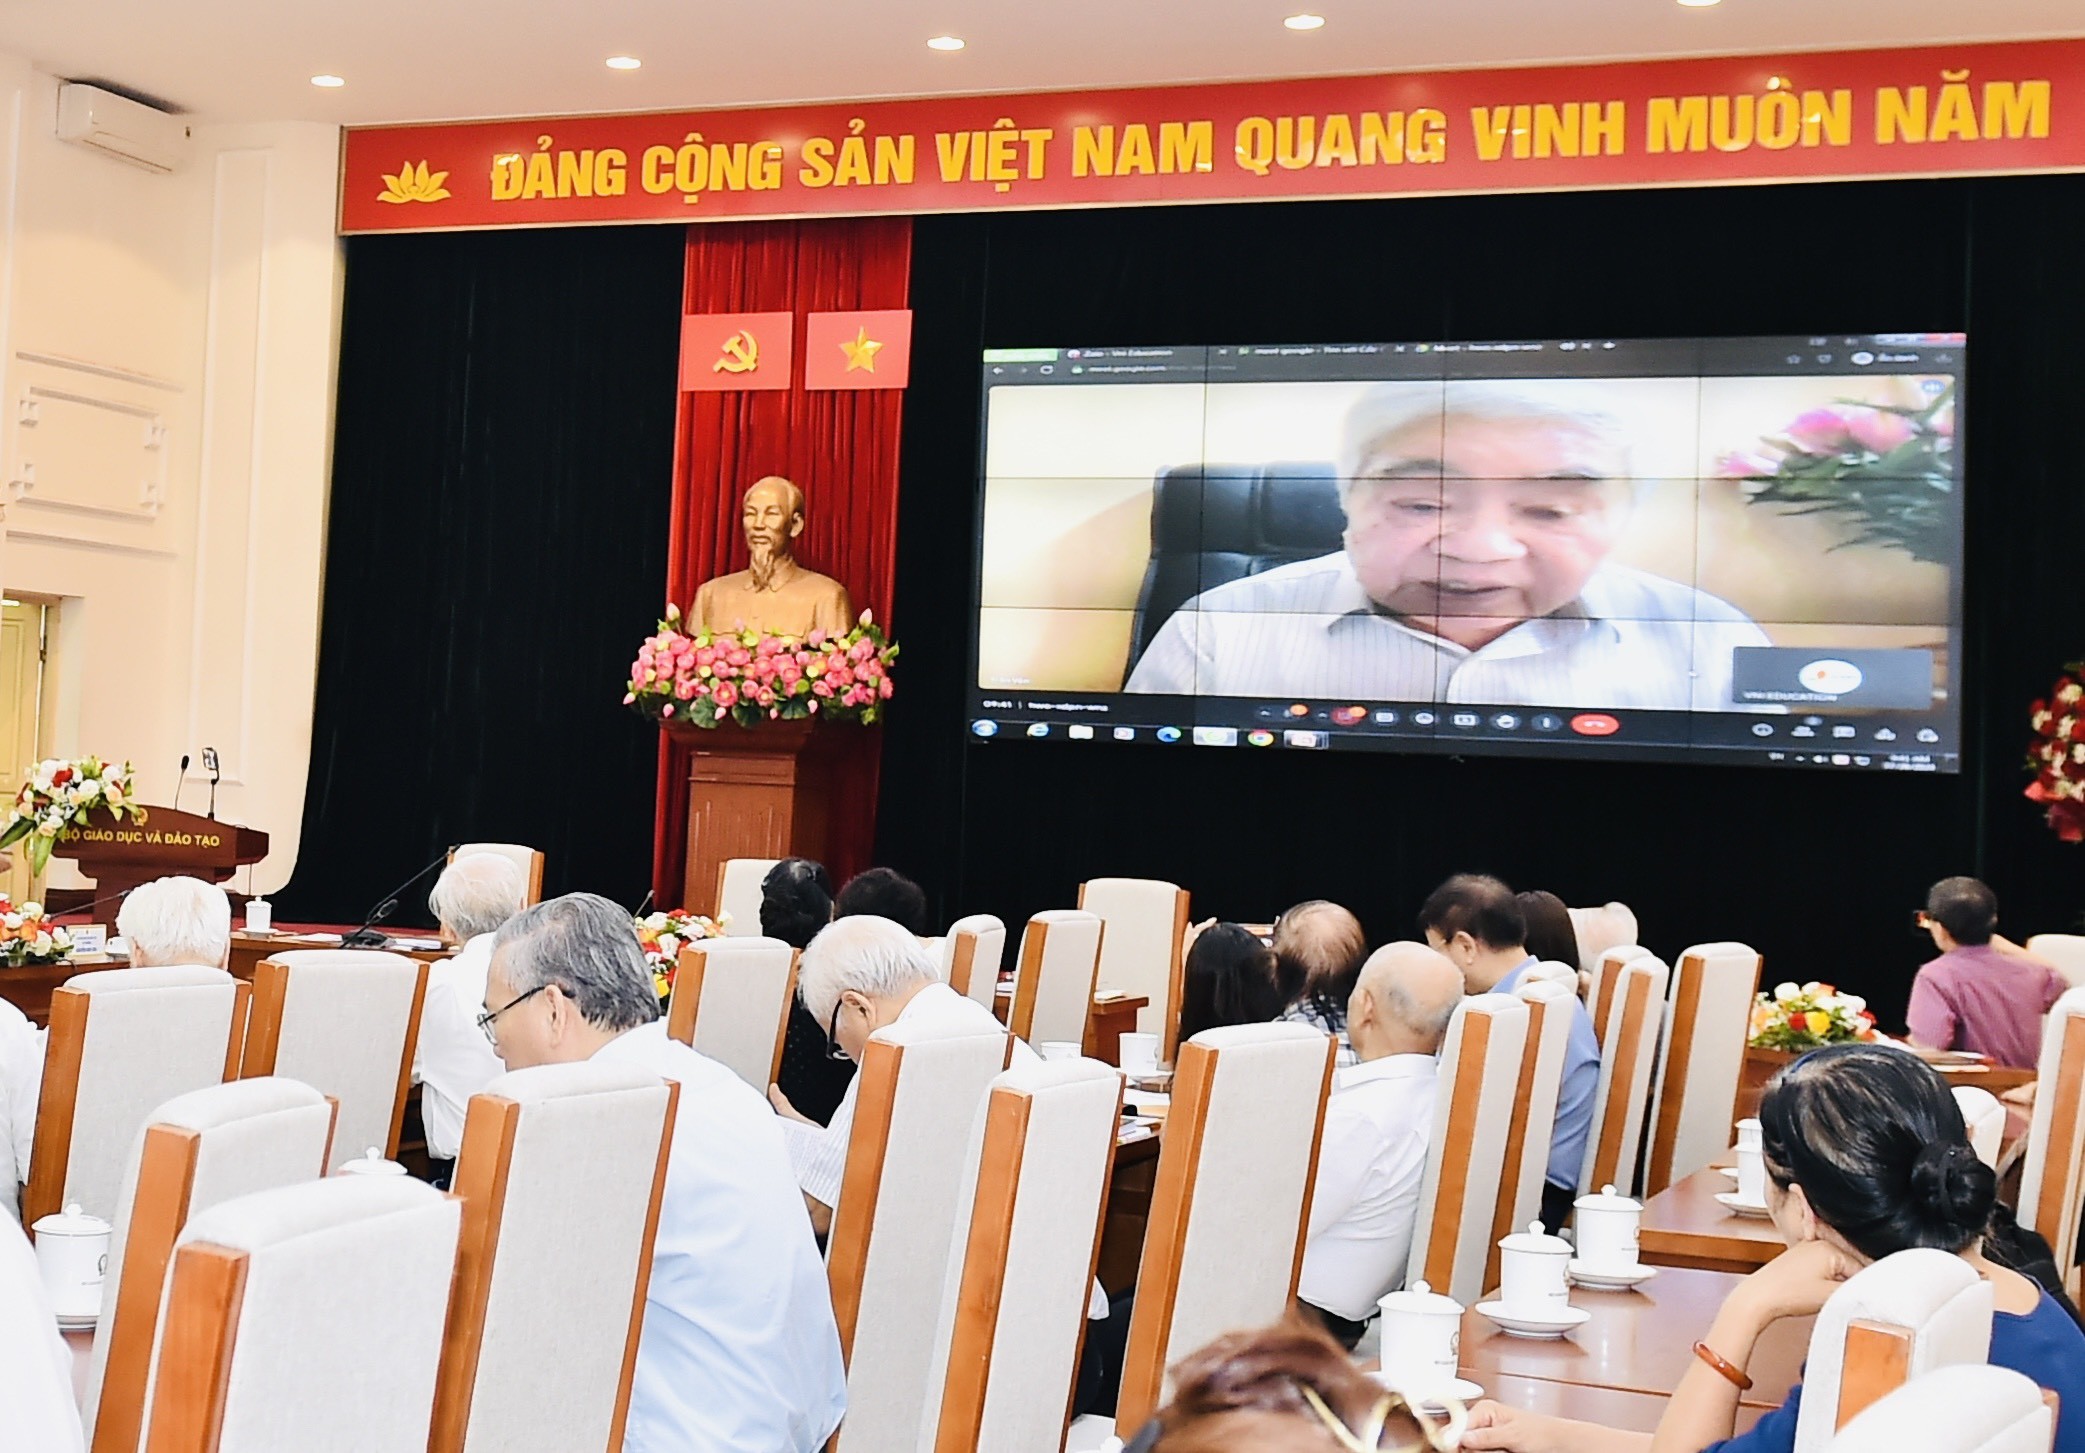 GS.VS.NGND Phạm Minh Hạc với sự phát triển khoa học giáo dục Việt Nam